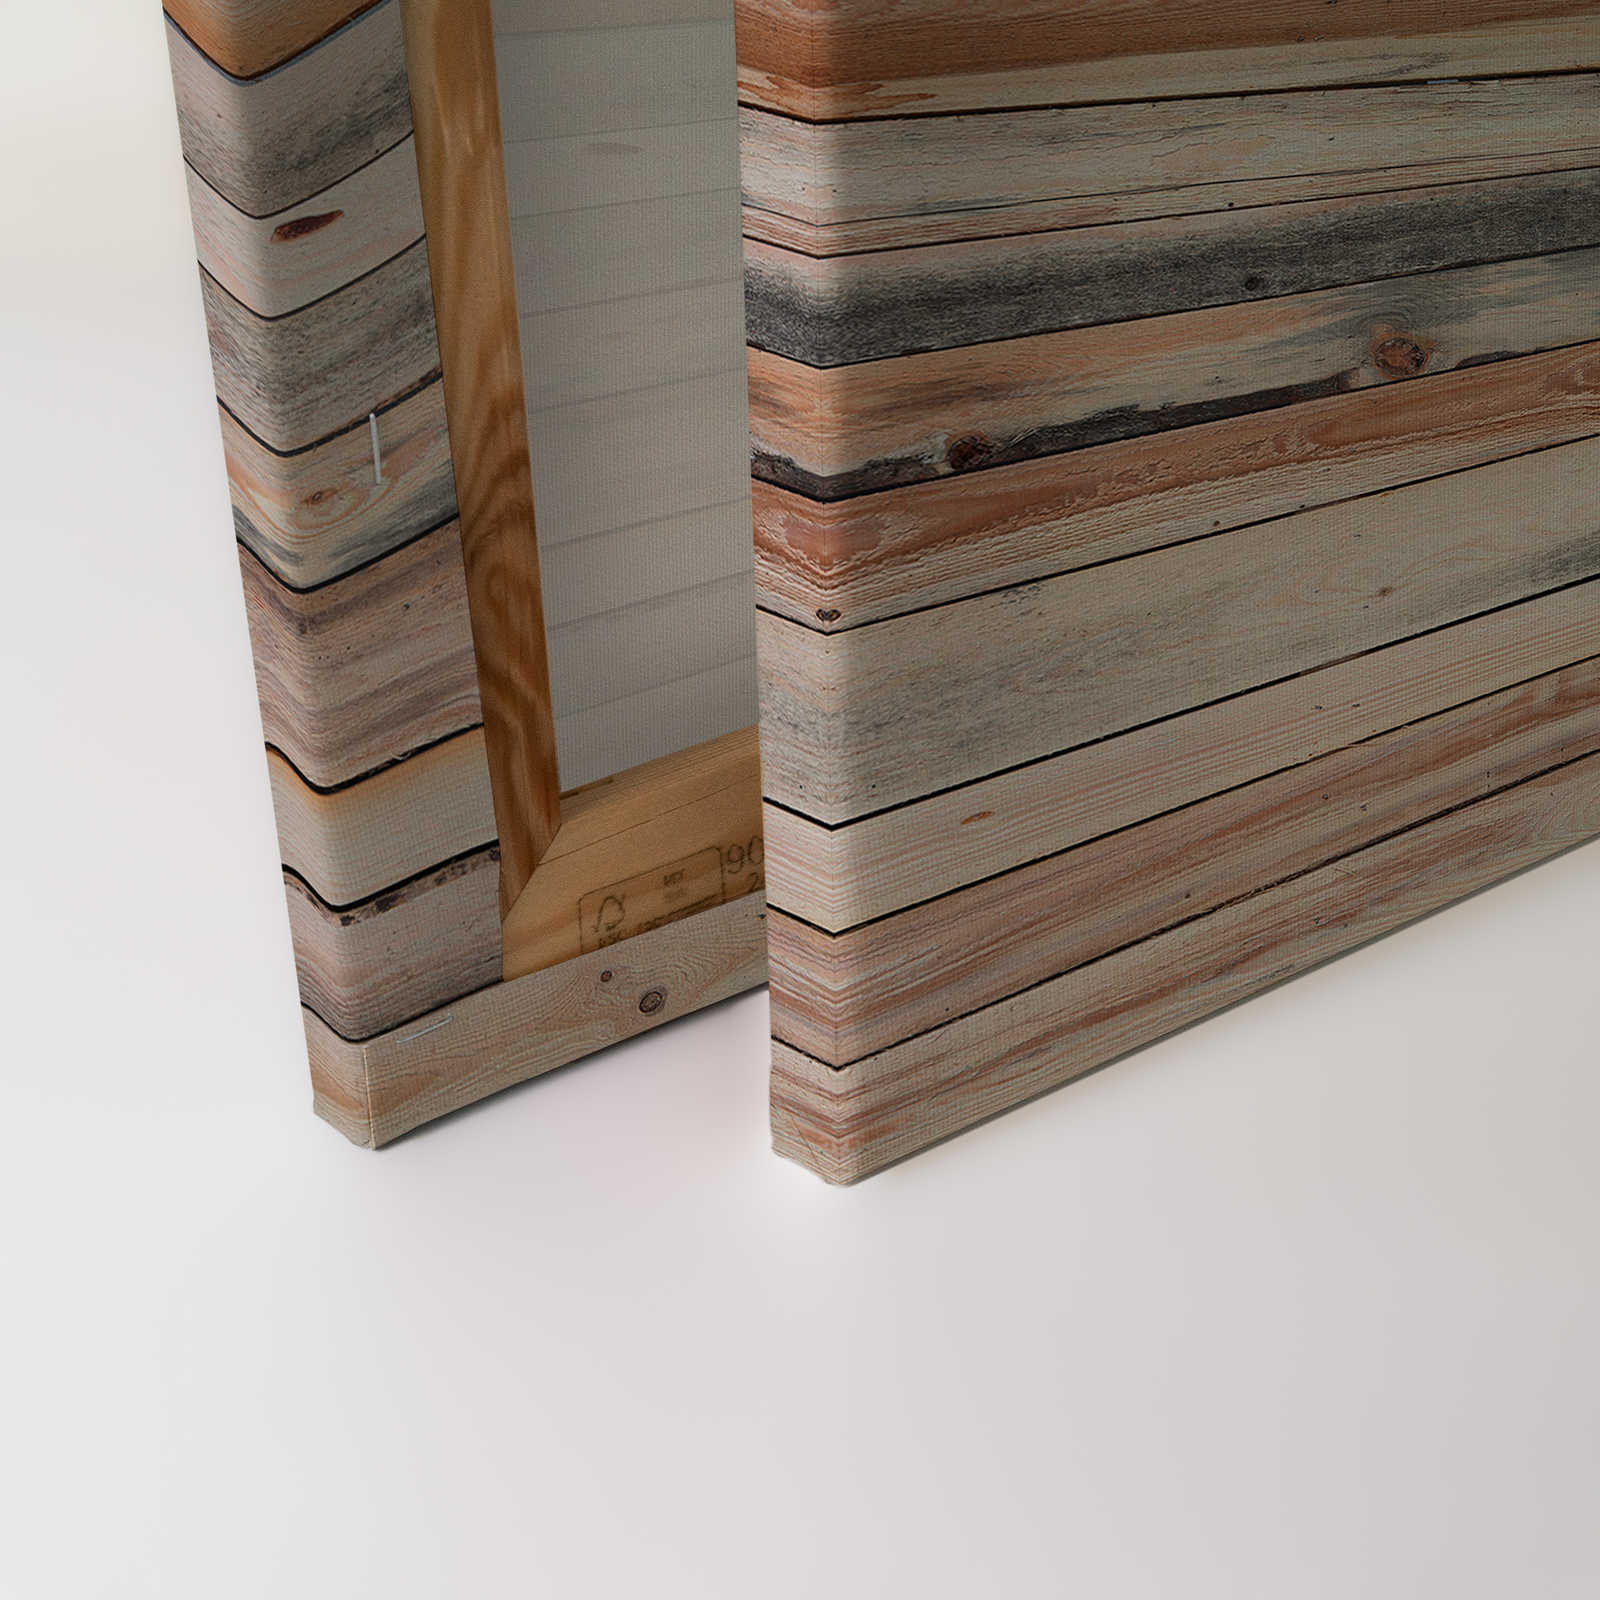             Planches de bois usées - Tableau sur toile au look usé pour mettre en valeur le mur - 0,90 m x 0,60 m
        